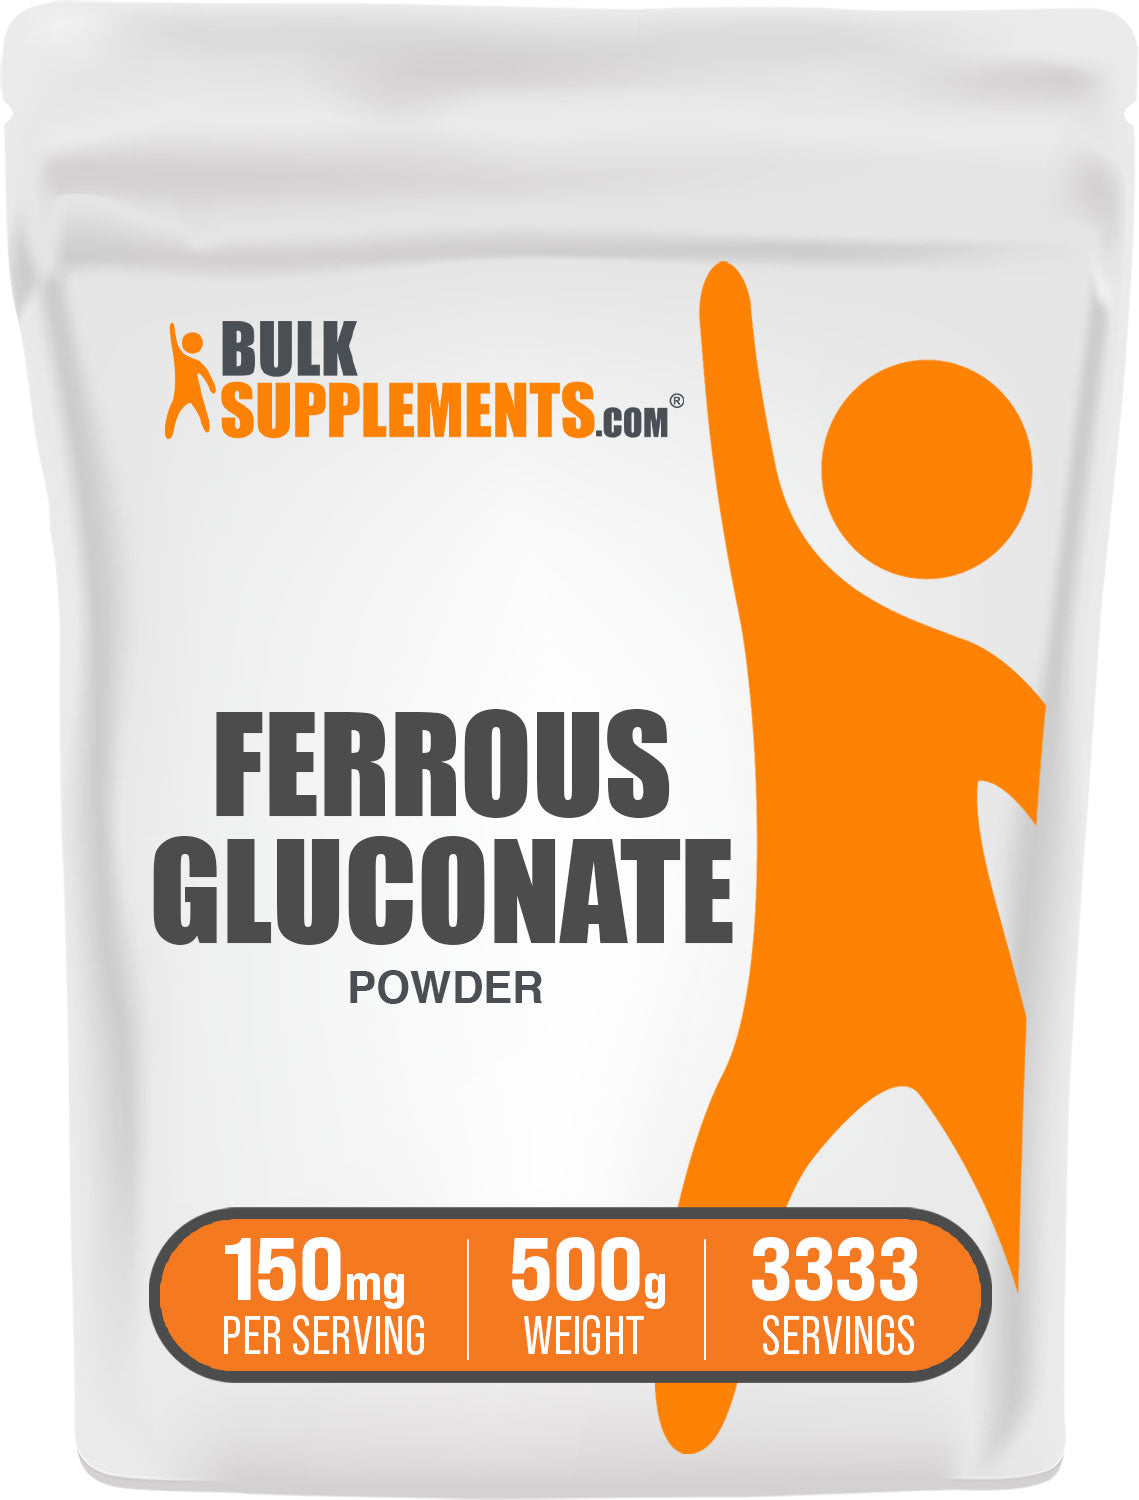 BulkSupplements.com Ferrous Gluconate Powder 500g Bag